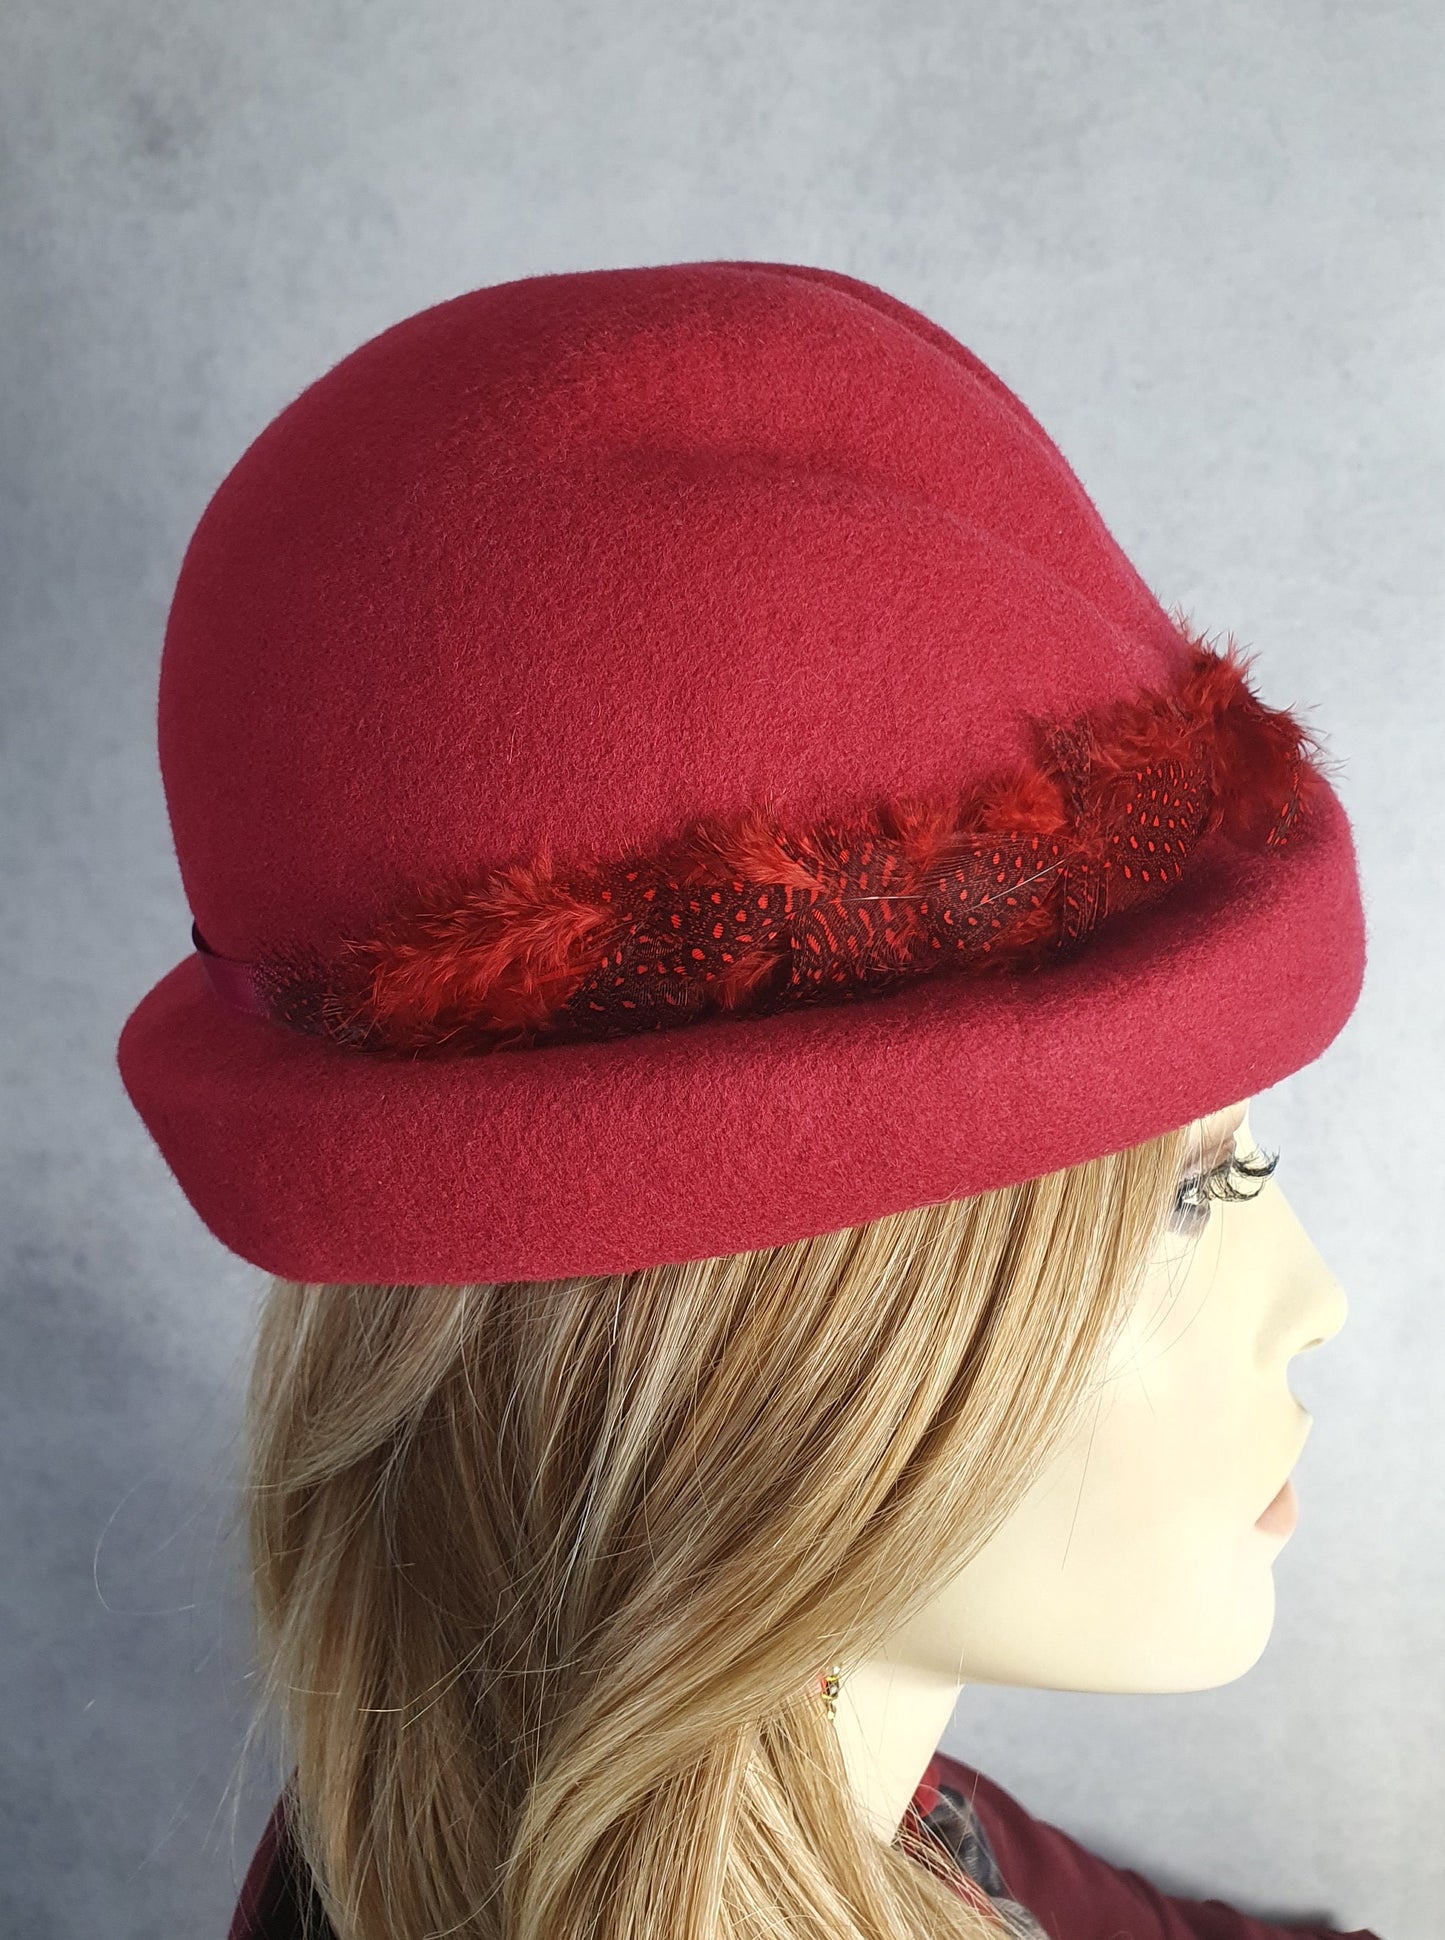 Handgemaakte vilten hoed in bordeaux rood, elegante vintage hoed met fazantenveren -Perfect voor de herfst & winter en speciale gelegenheden